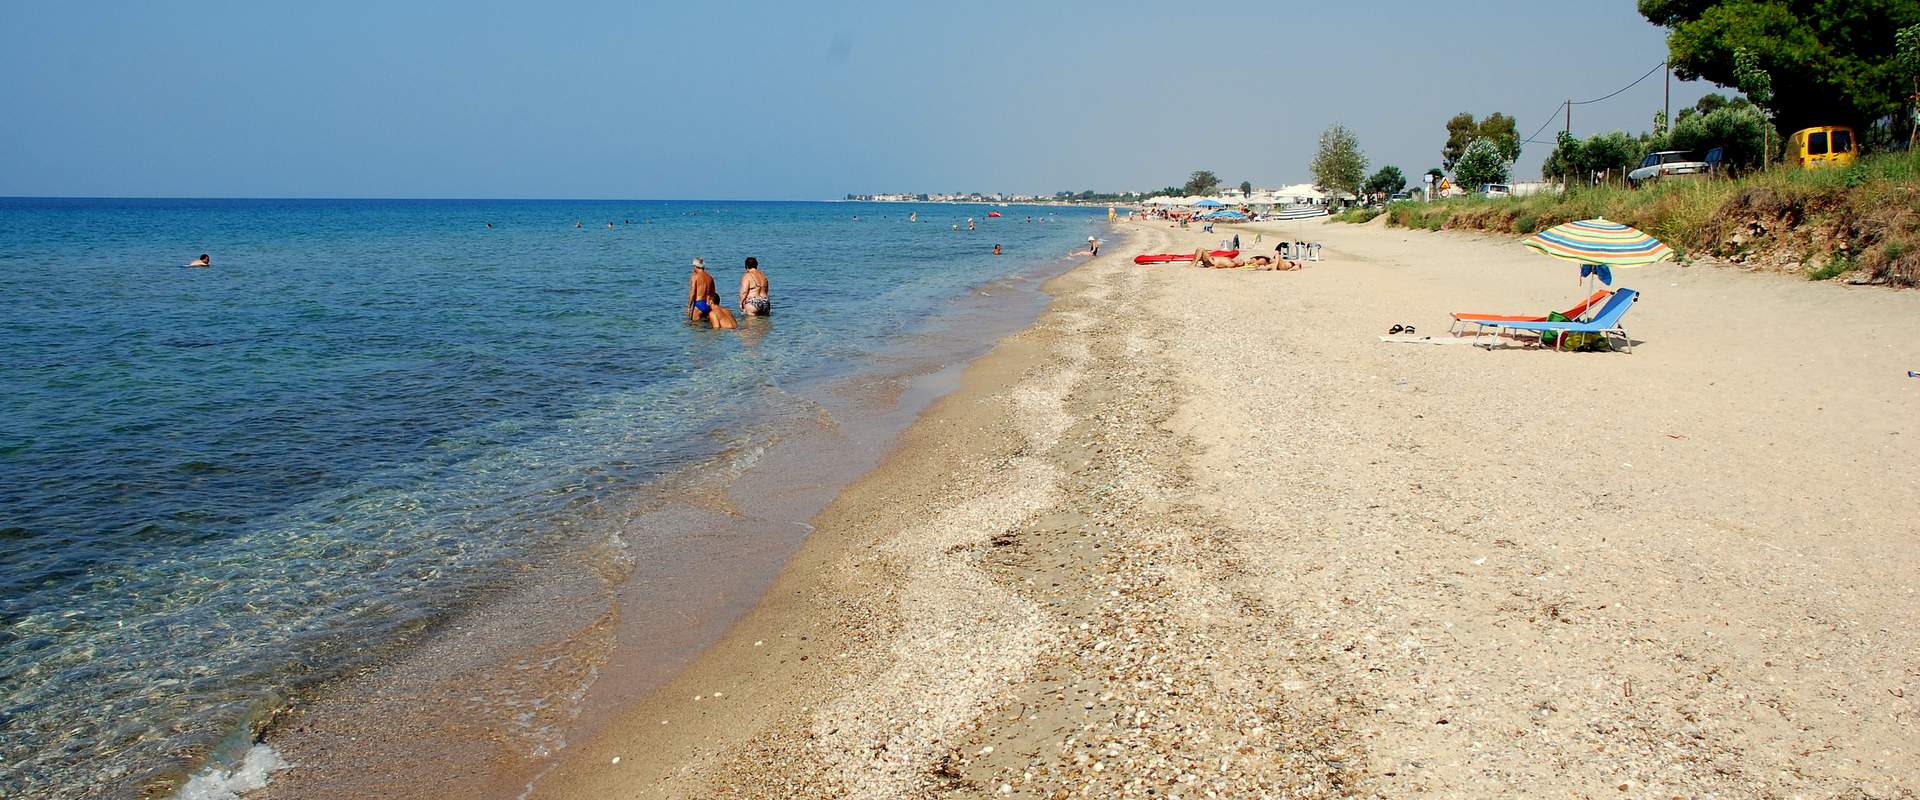 Πορταριά παραλία, Χαλκιδική, Ελλάδα